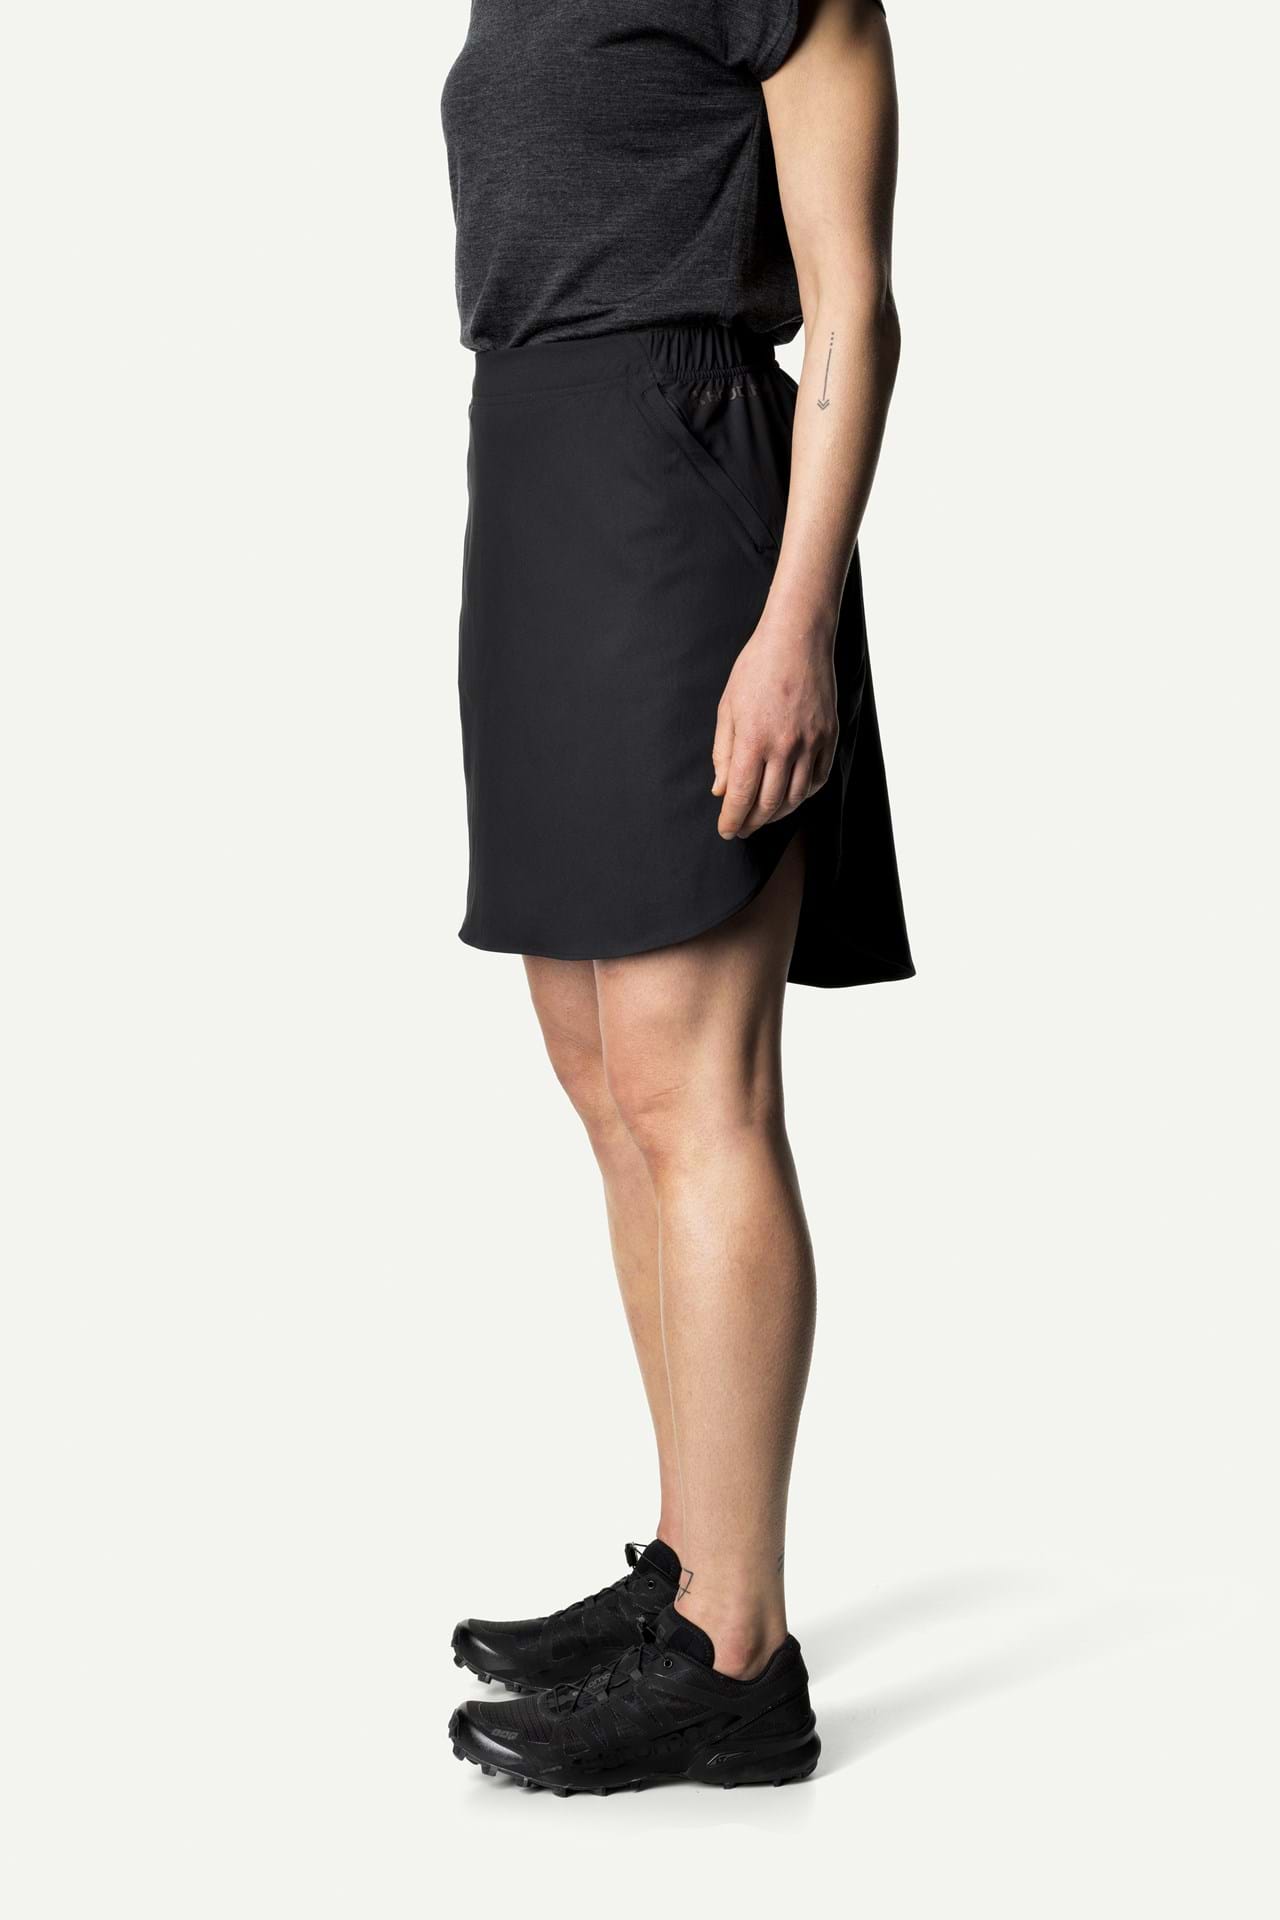 Houdini W's Stride Skirt - Recycled PET True Black Skirt